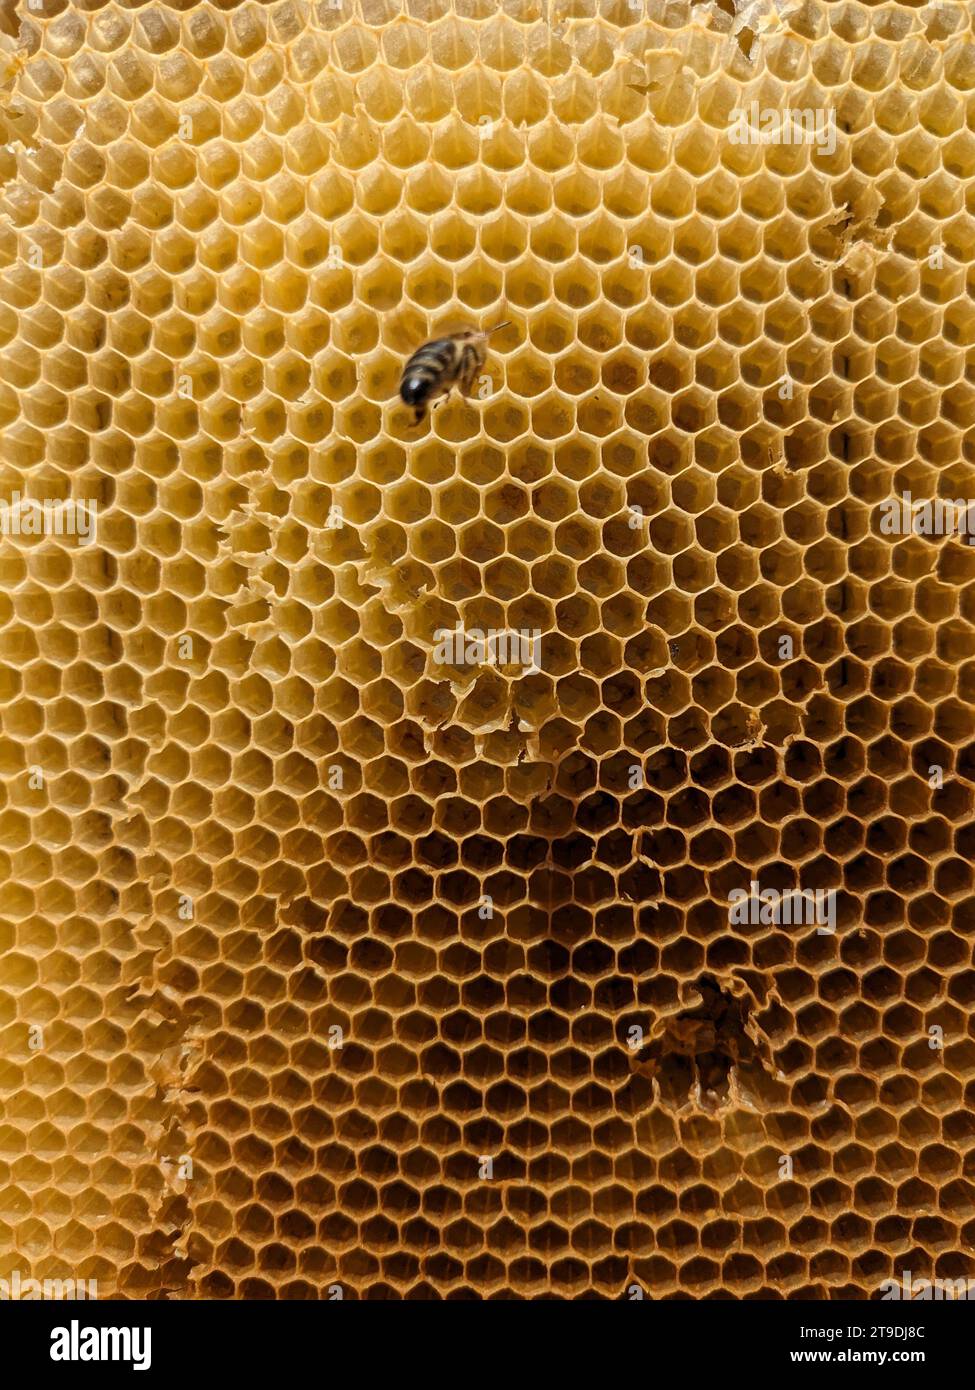 Favi a nido d'ape con naturale consistenza di cera di api sane. Primo piano della struttura delle celle esagonali in cera d'api su telai in legno, quelli nuovi sono gialli e quelli più vecchi Foto Stock